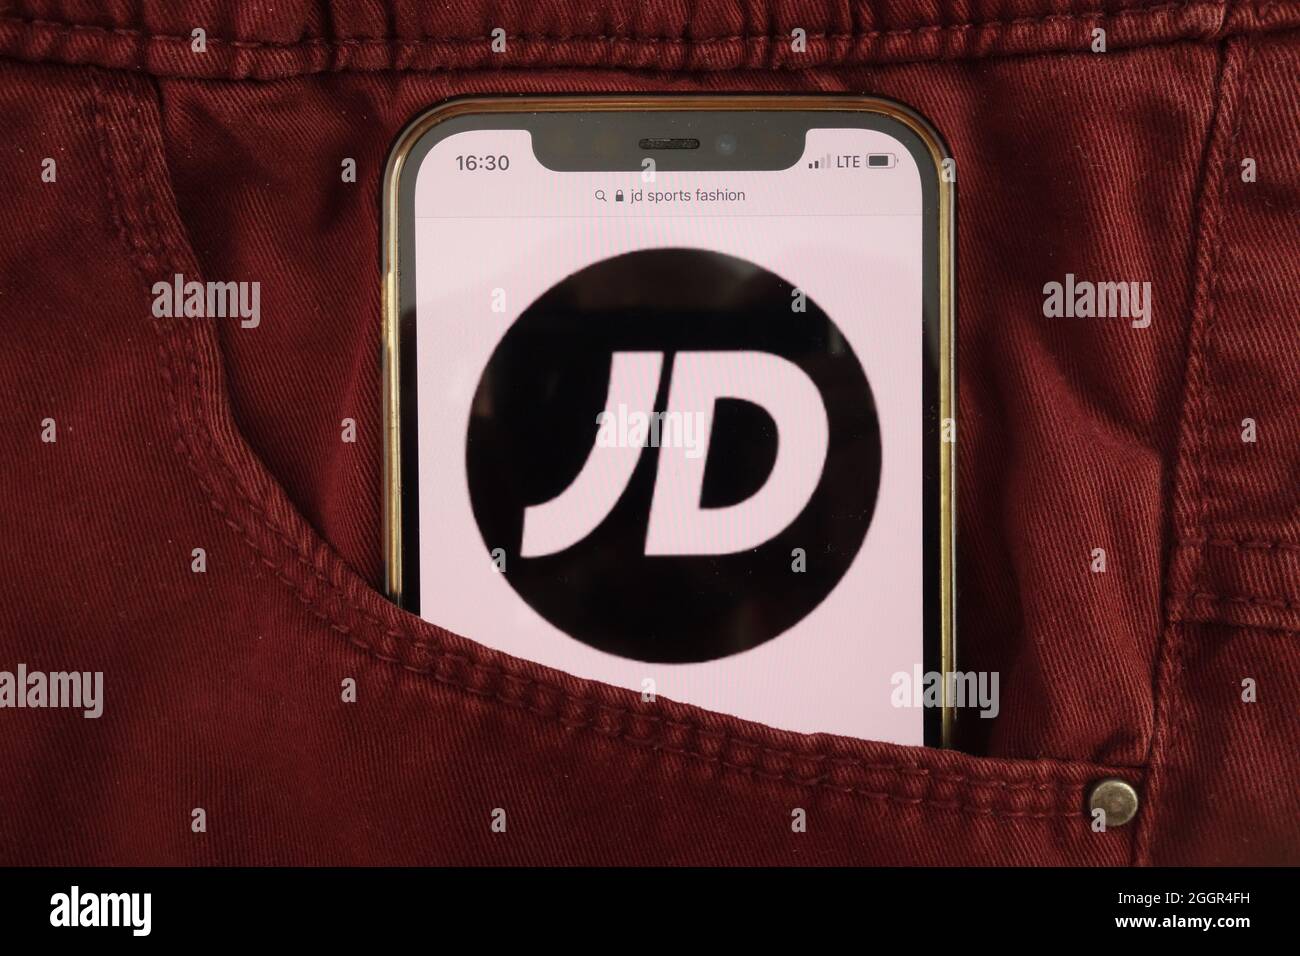 KONSKIE, POLOGNE - 17 août 2021 : logo JD Sports Fashion plc affiché sur un téléphone mobile caché dans une poche de jeans Banque D'Images